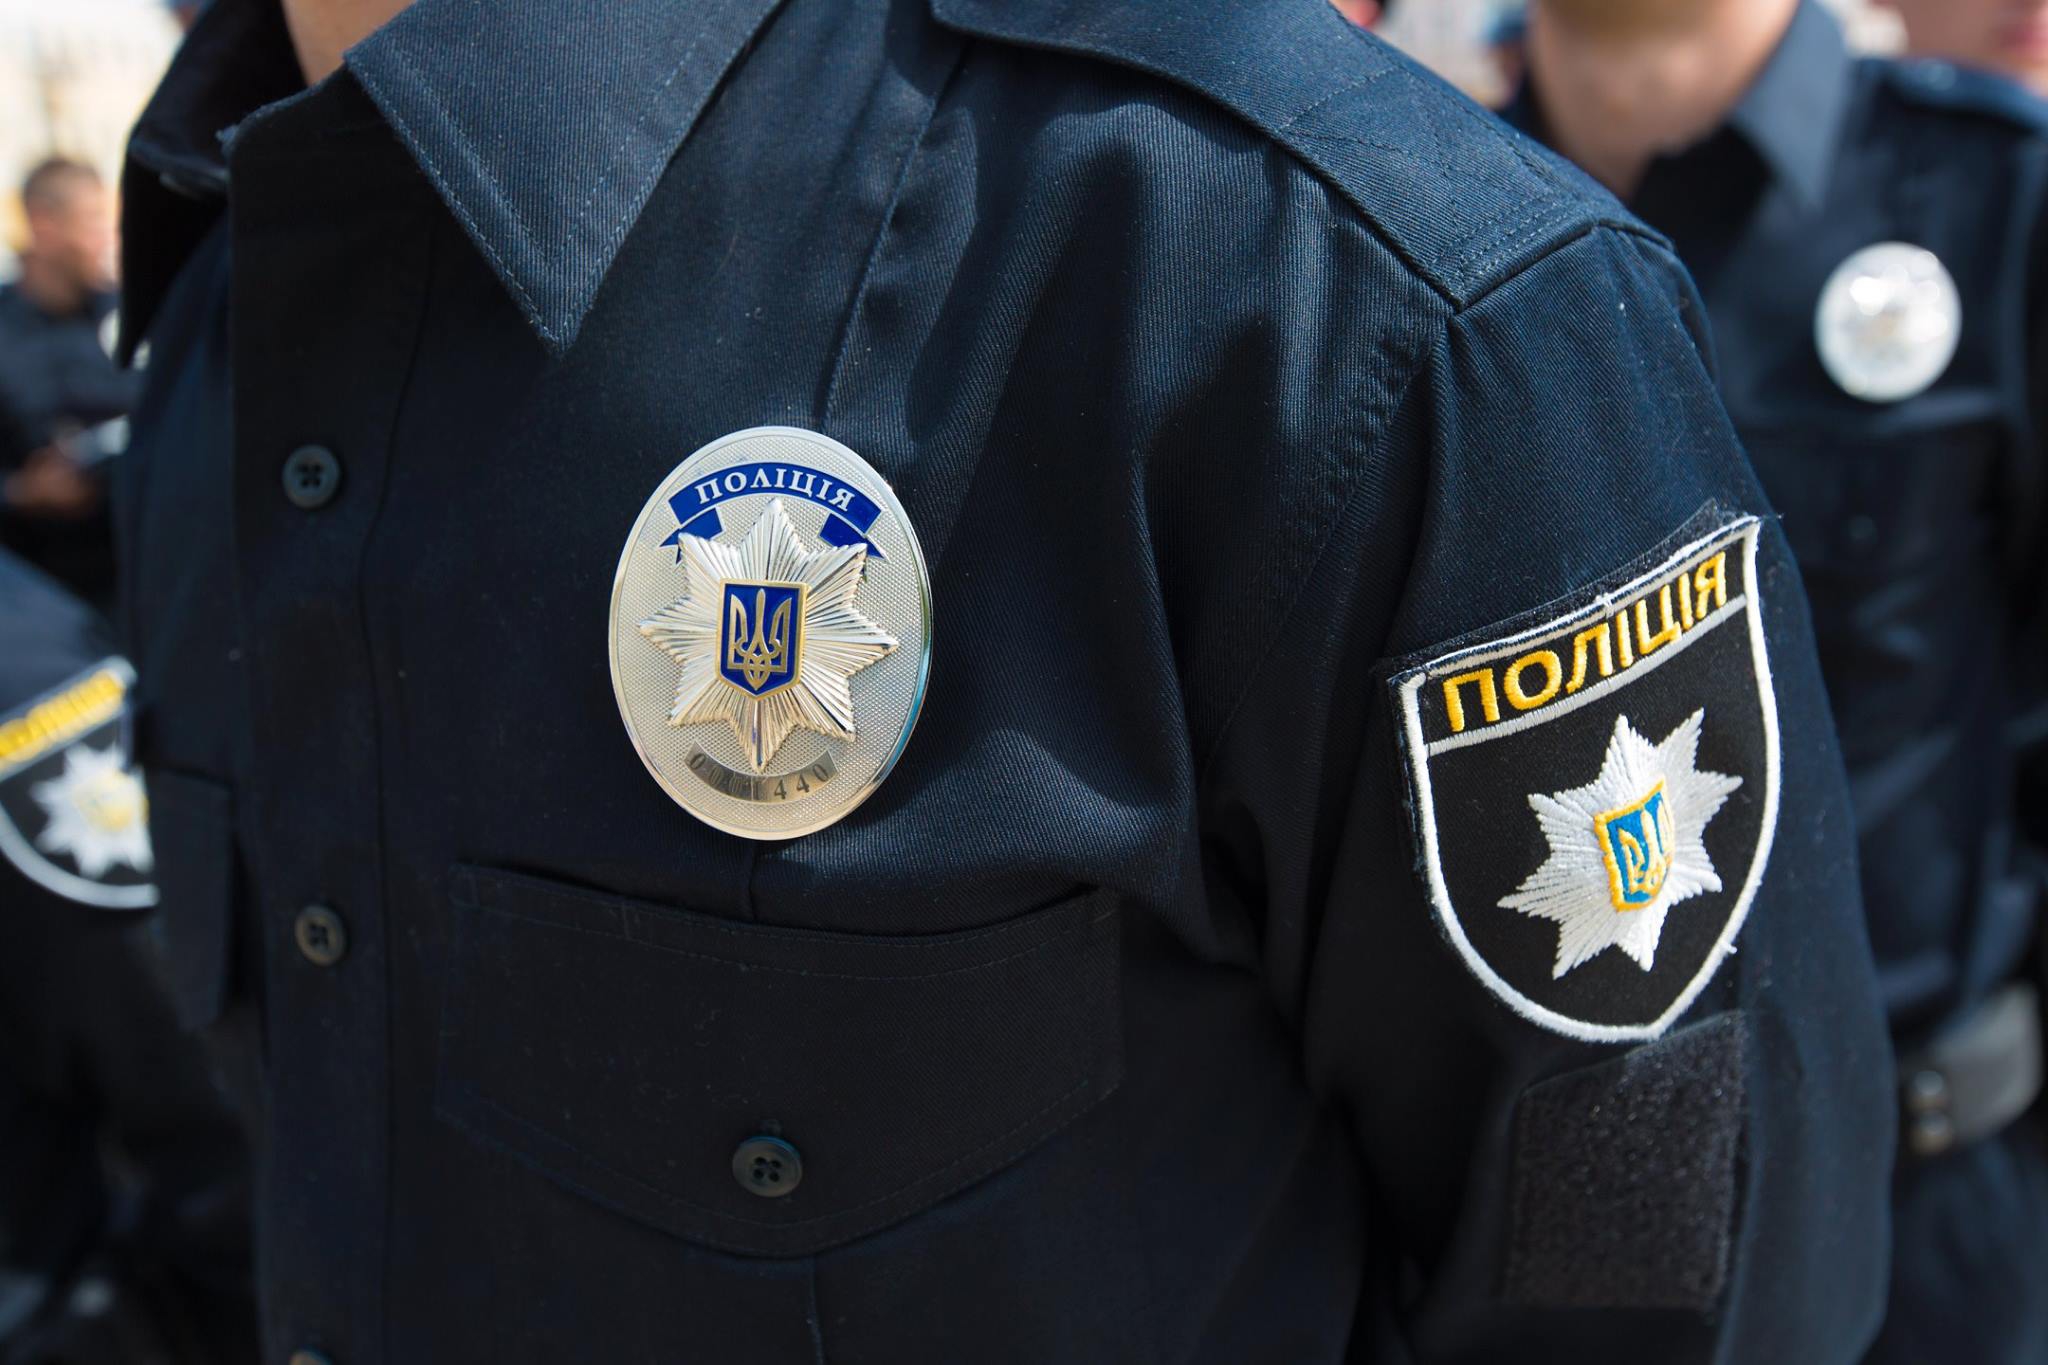 Задержанный оказался 20-летним уроженцем Полтавской области  - фото 1